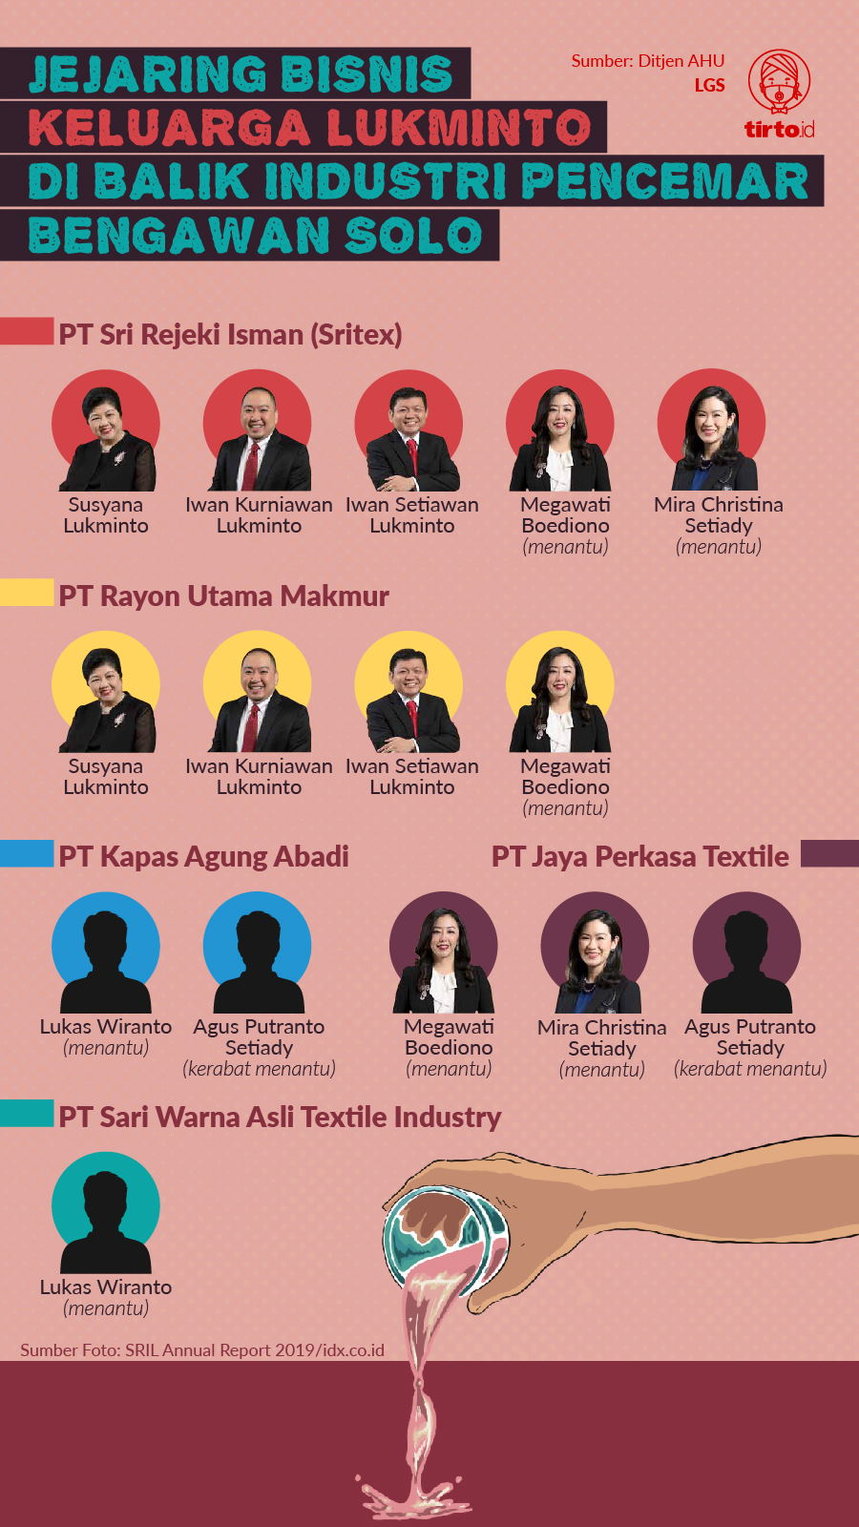 Infografik Jejaring Bisnis Keluarga Lukminto